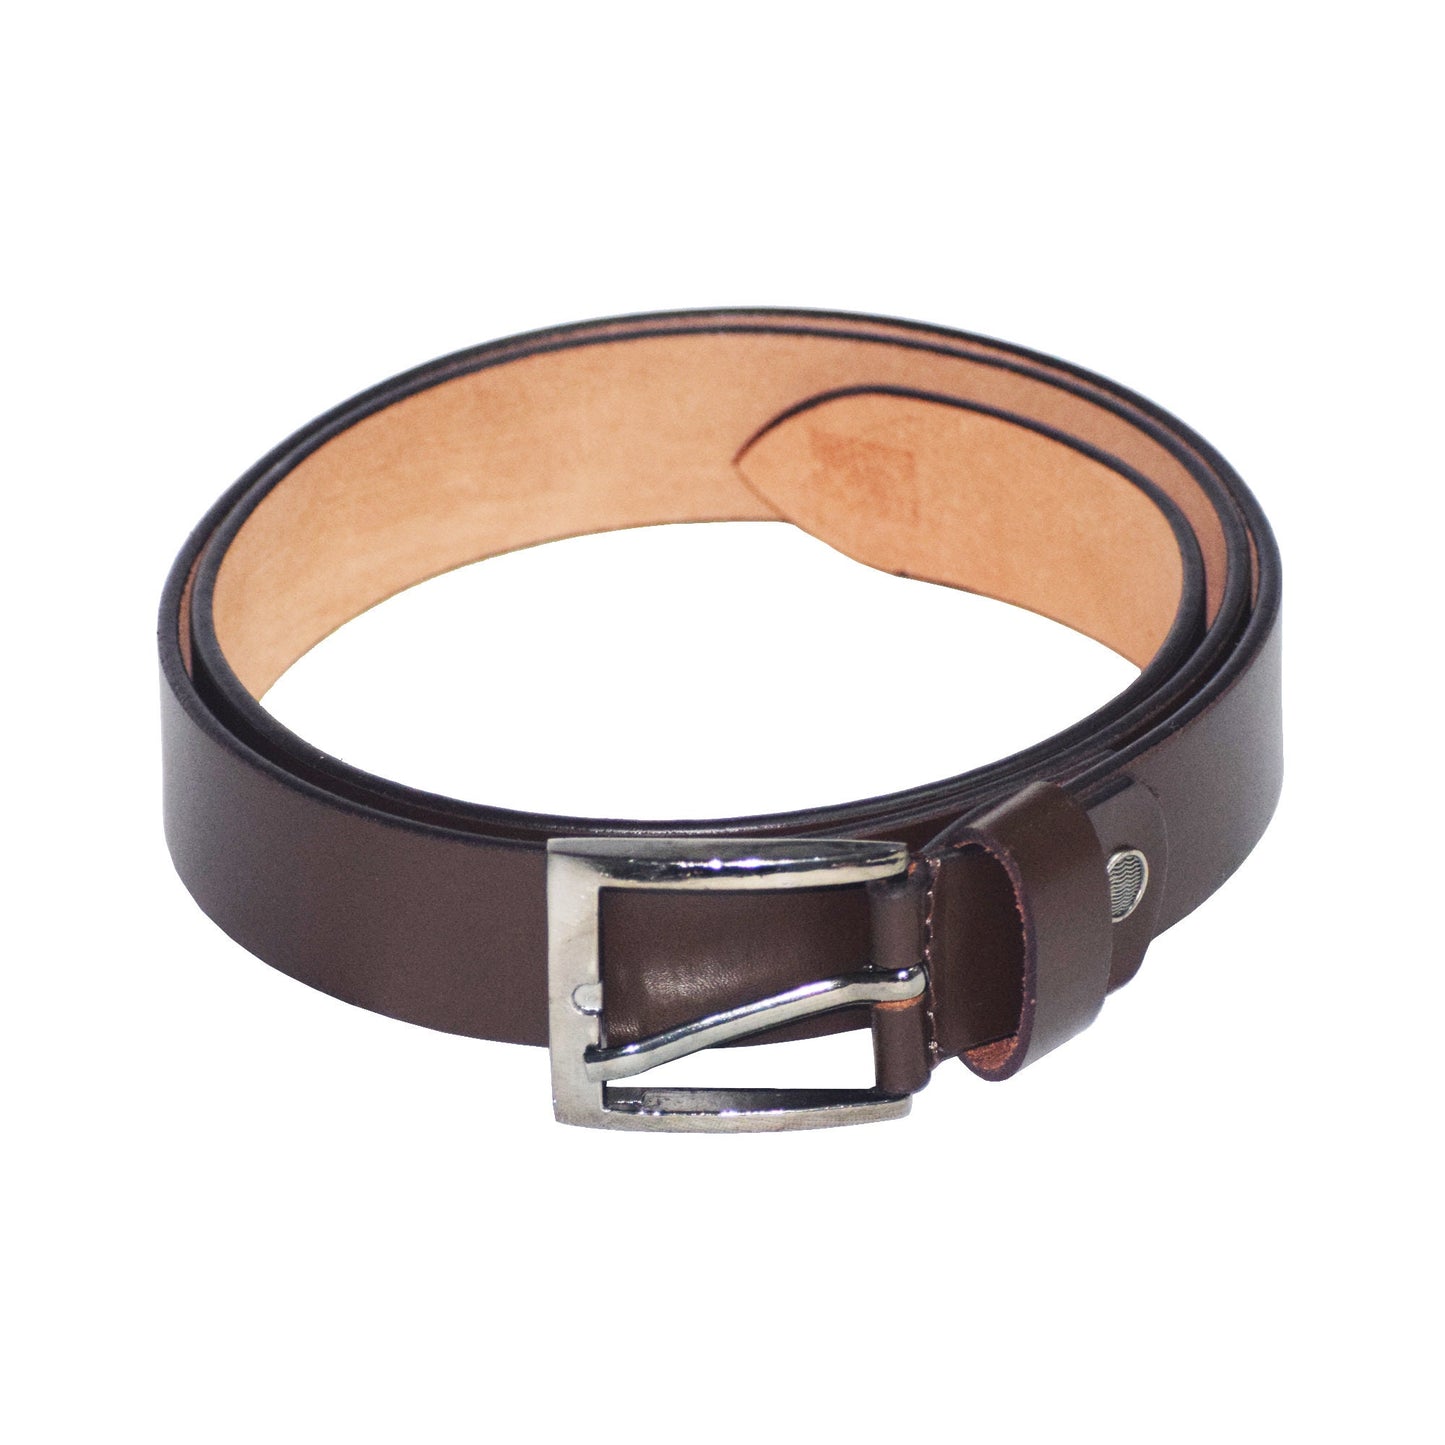 Full Grain Genuine Leather Belt For Mens Brown Leather Belt Mens Leather Belt Womens Leather Belt Leather Waist Belt Gift For Him